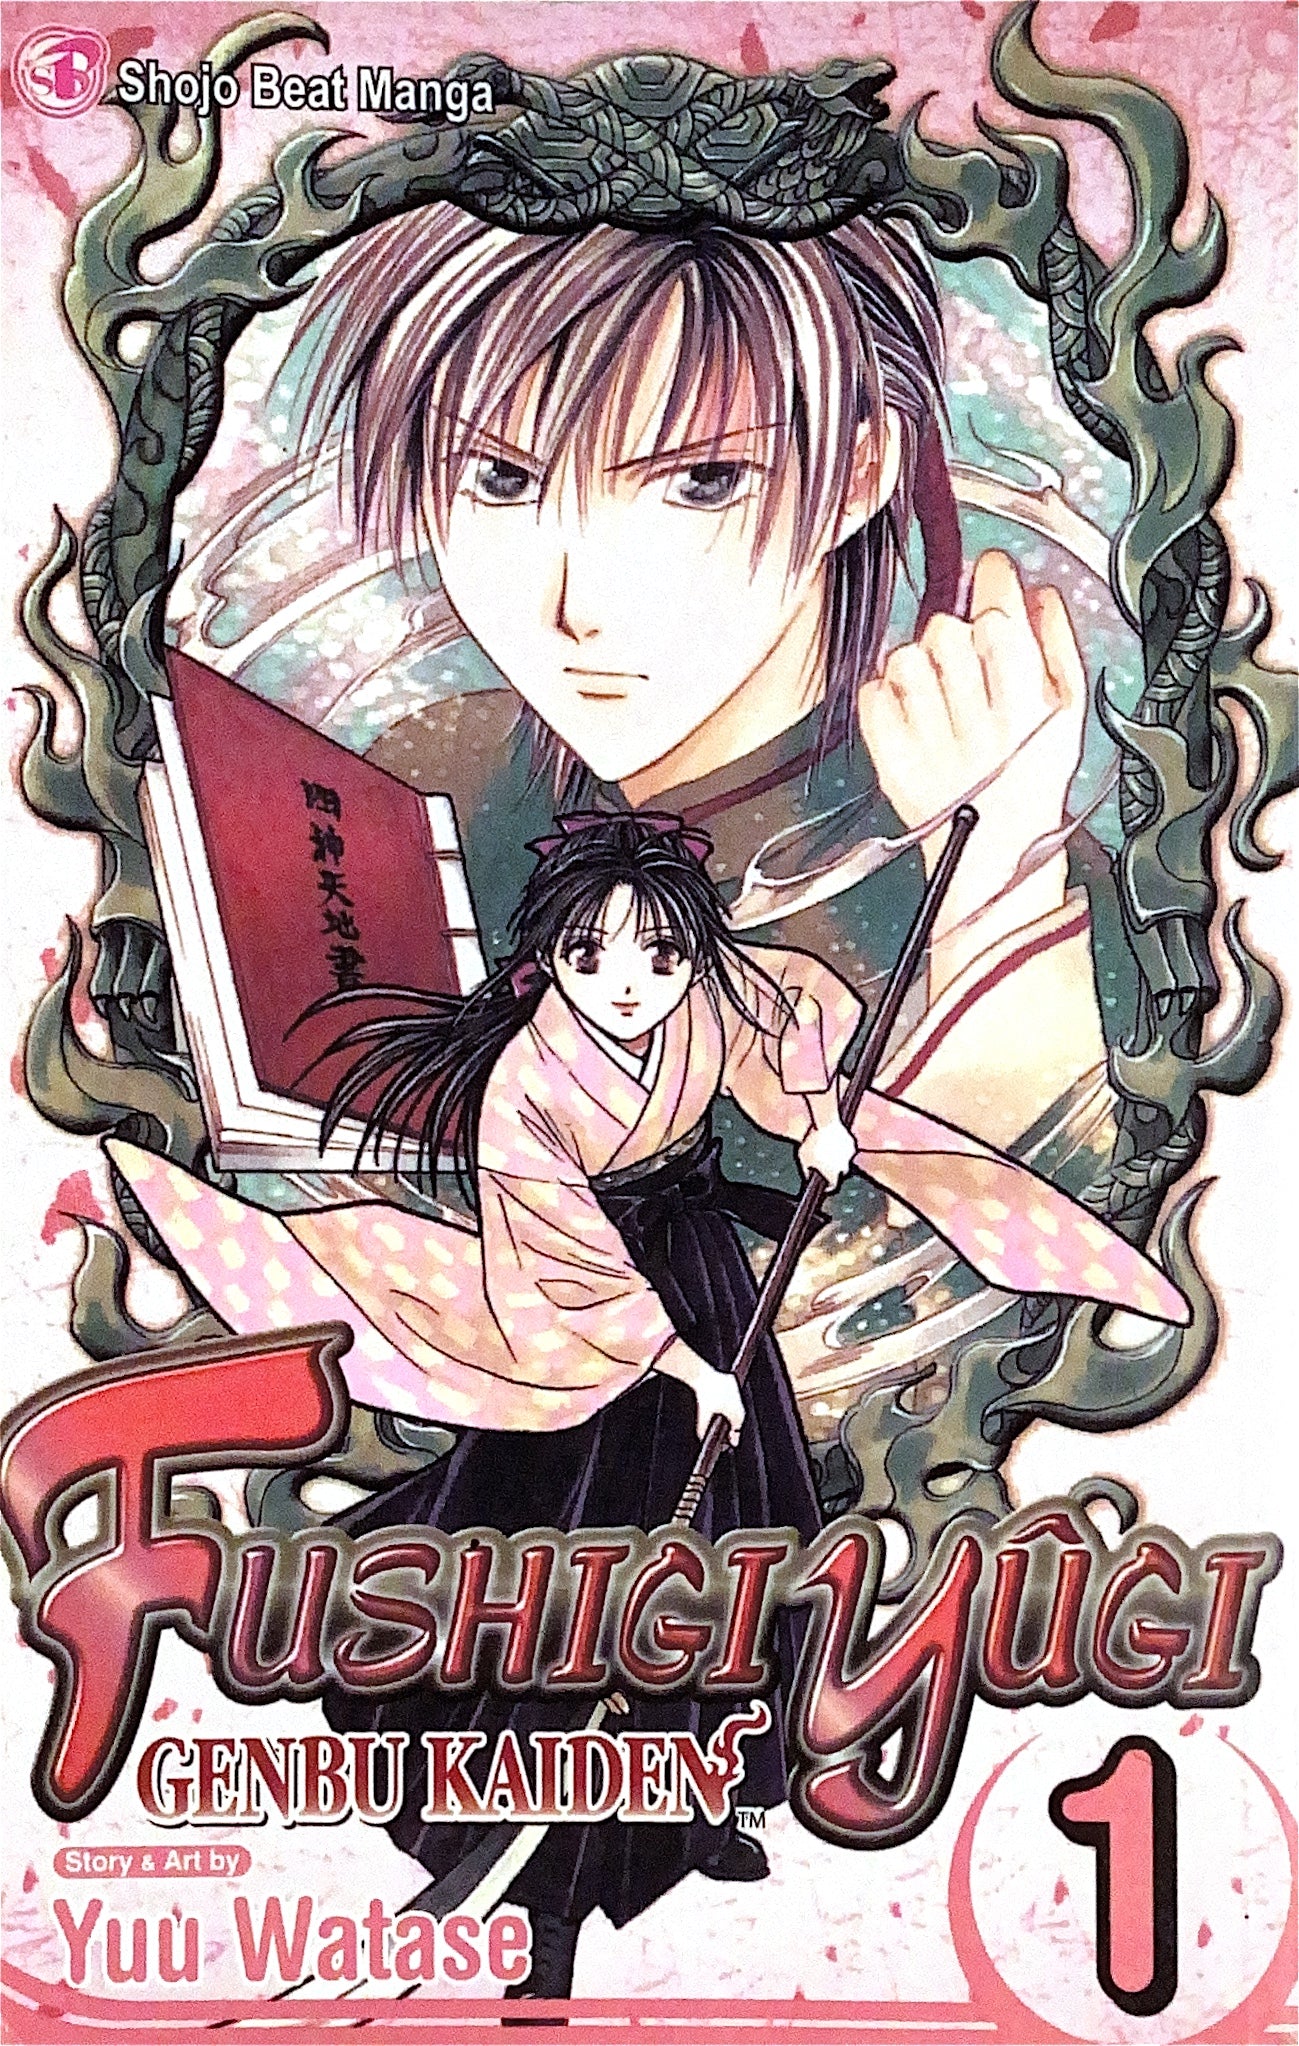 Fushigi Yugi, Genbu Kaiden Vol. 1 (18+) - (Used)